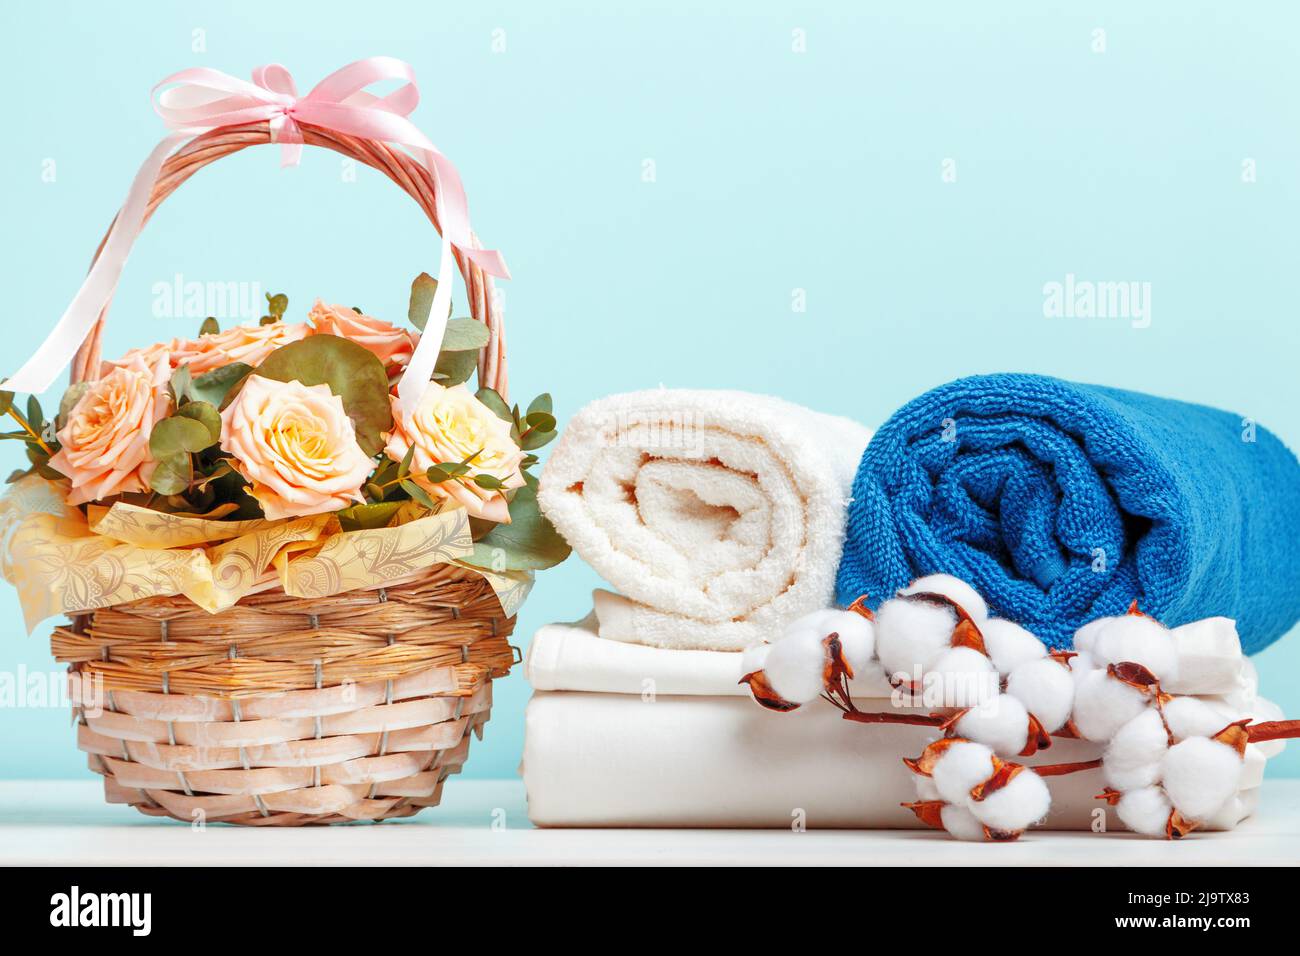 Ein Stapel weißer Bettwäsche, Bettwäsche und eine Rolle Handtücher. Ein Korb mit Blumen und ein Zweig aus Baumwolle auf dem Tisch. Stockfoto